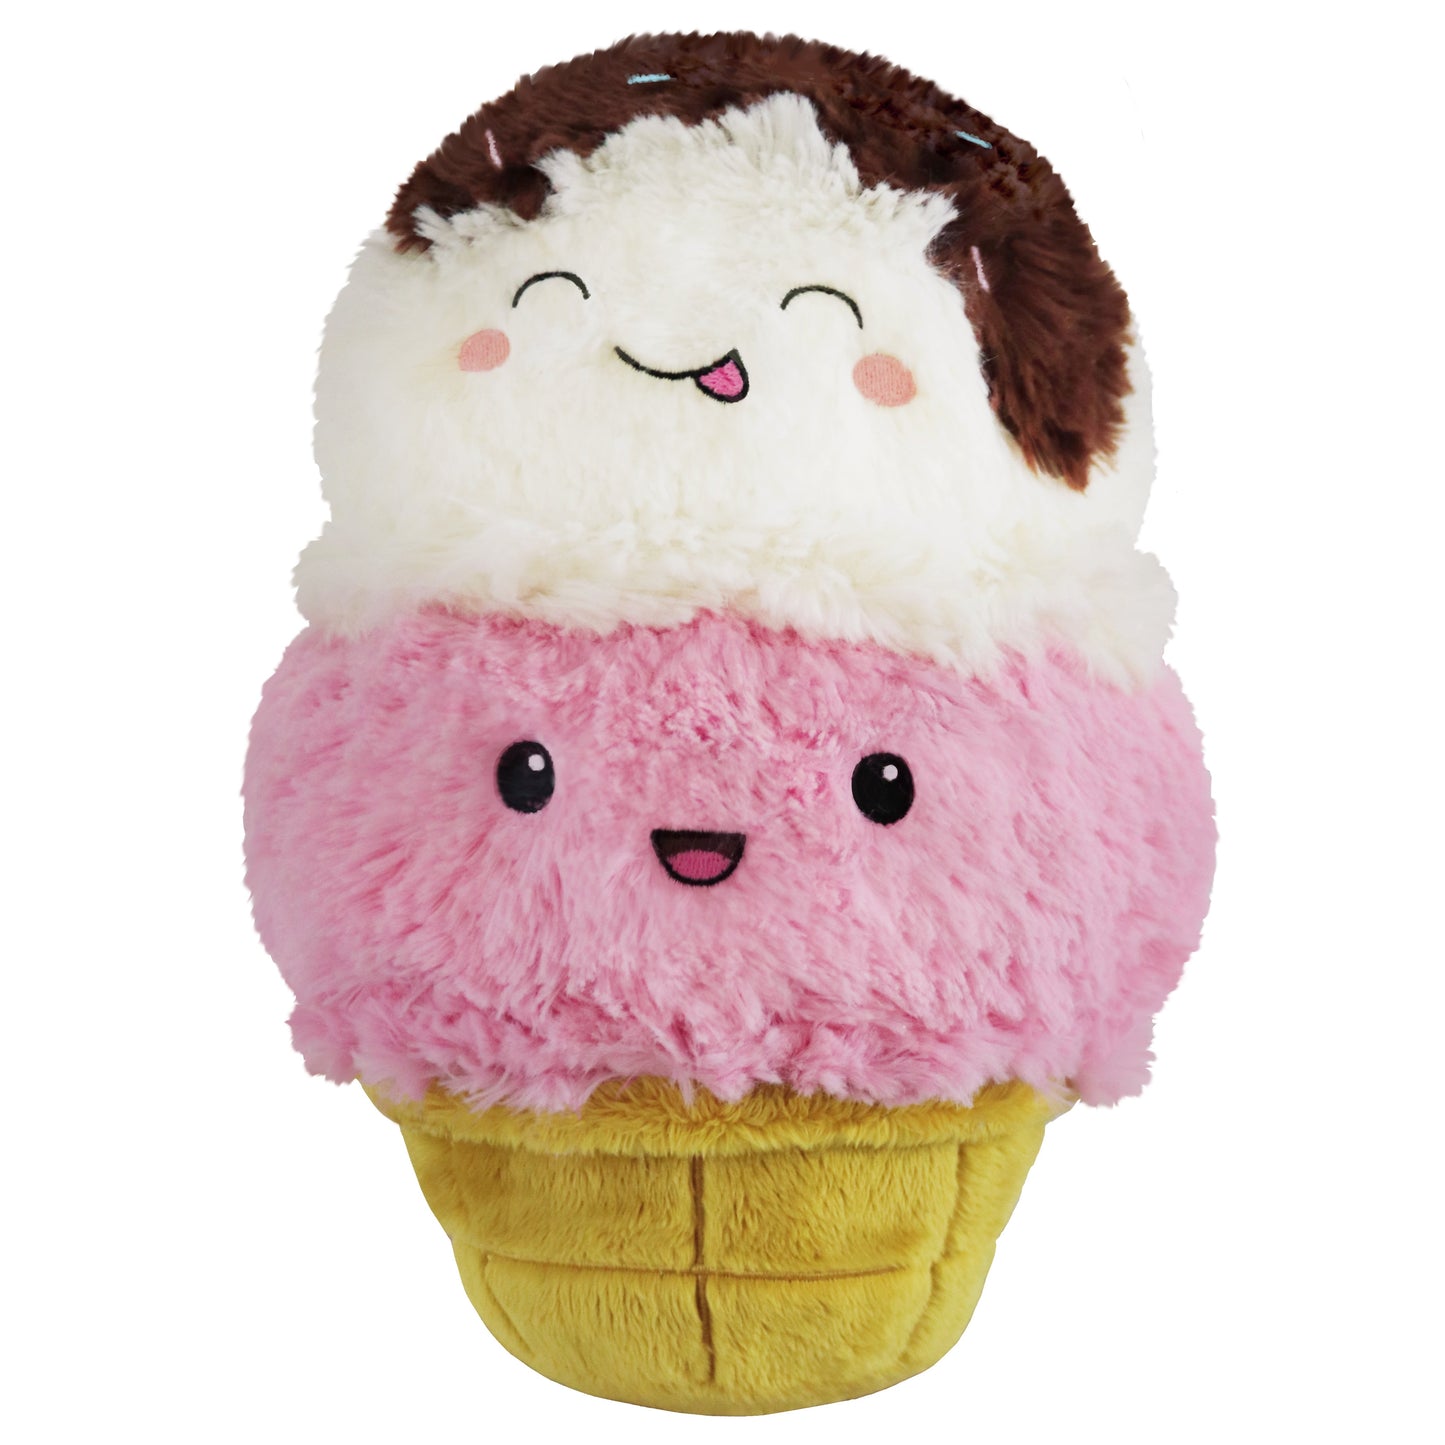 Squishable Mini Comfort Food Ice Cream Cone